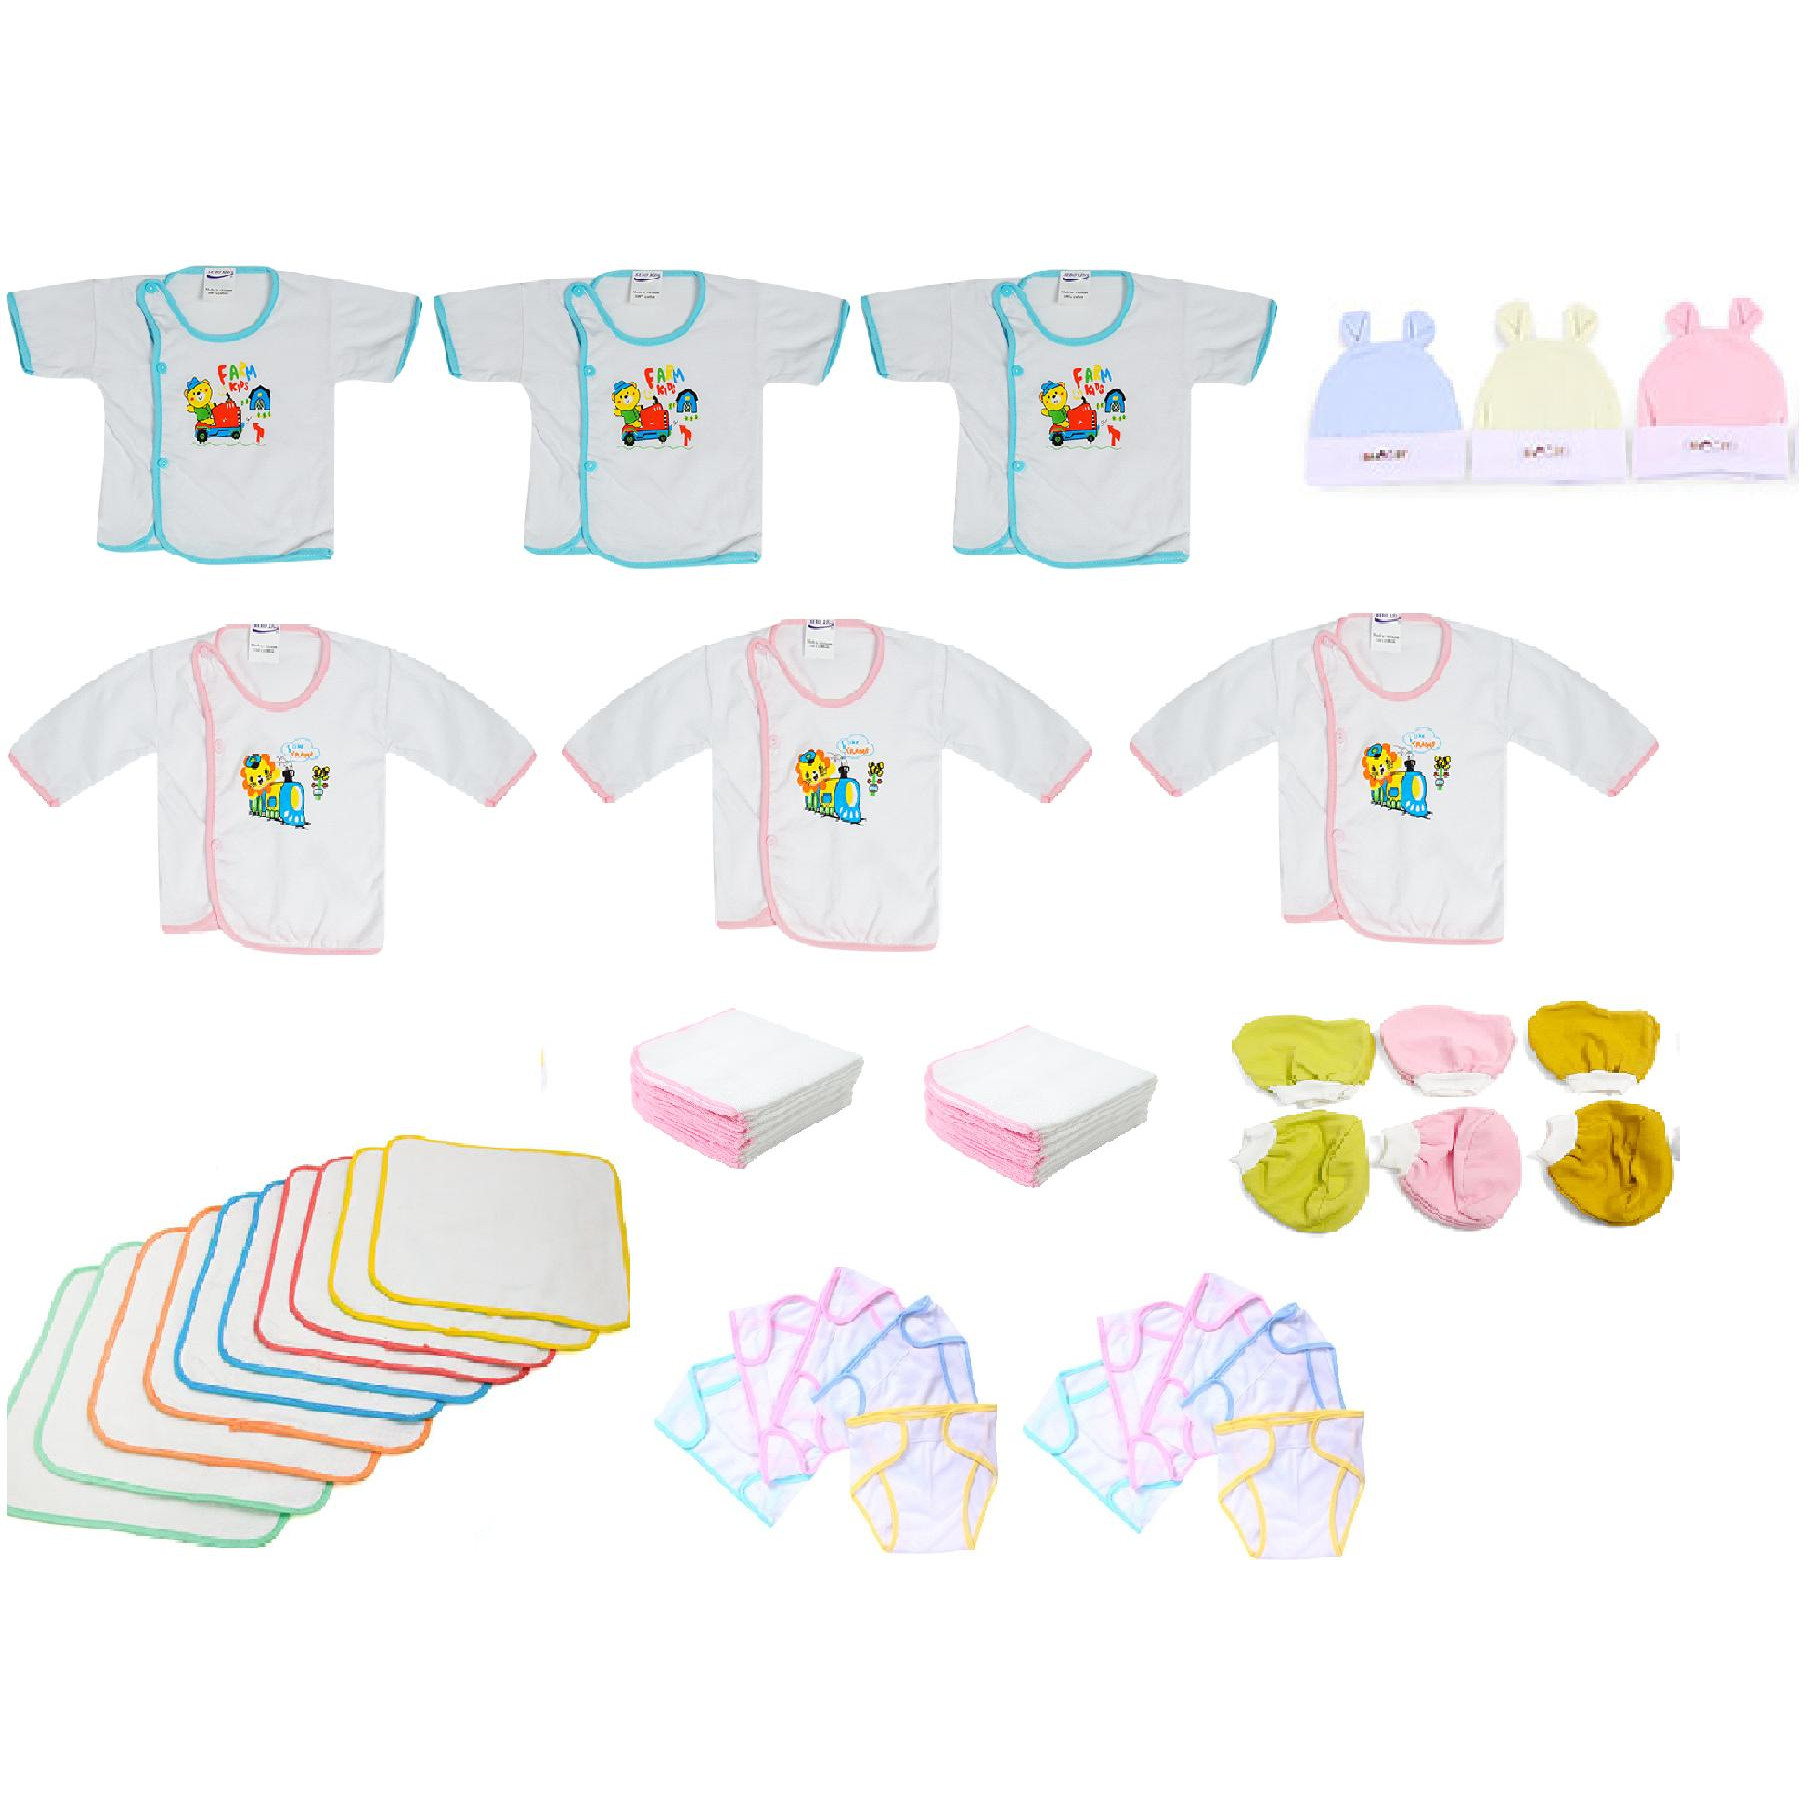 Set 45 món đồ cho bé sơ sinh từ 0 đến 3 tháng tuổi